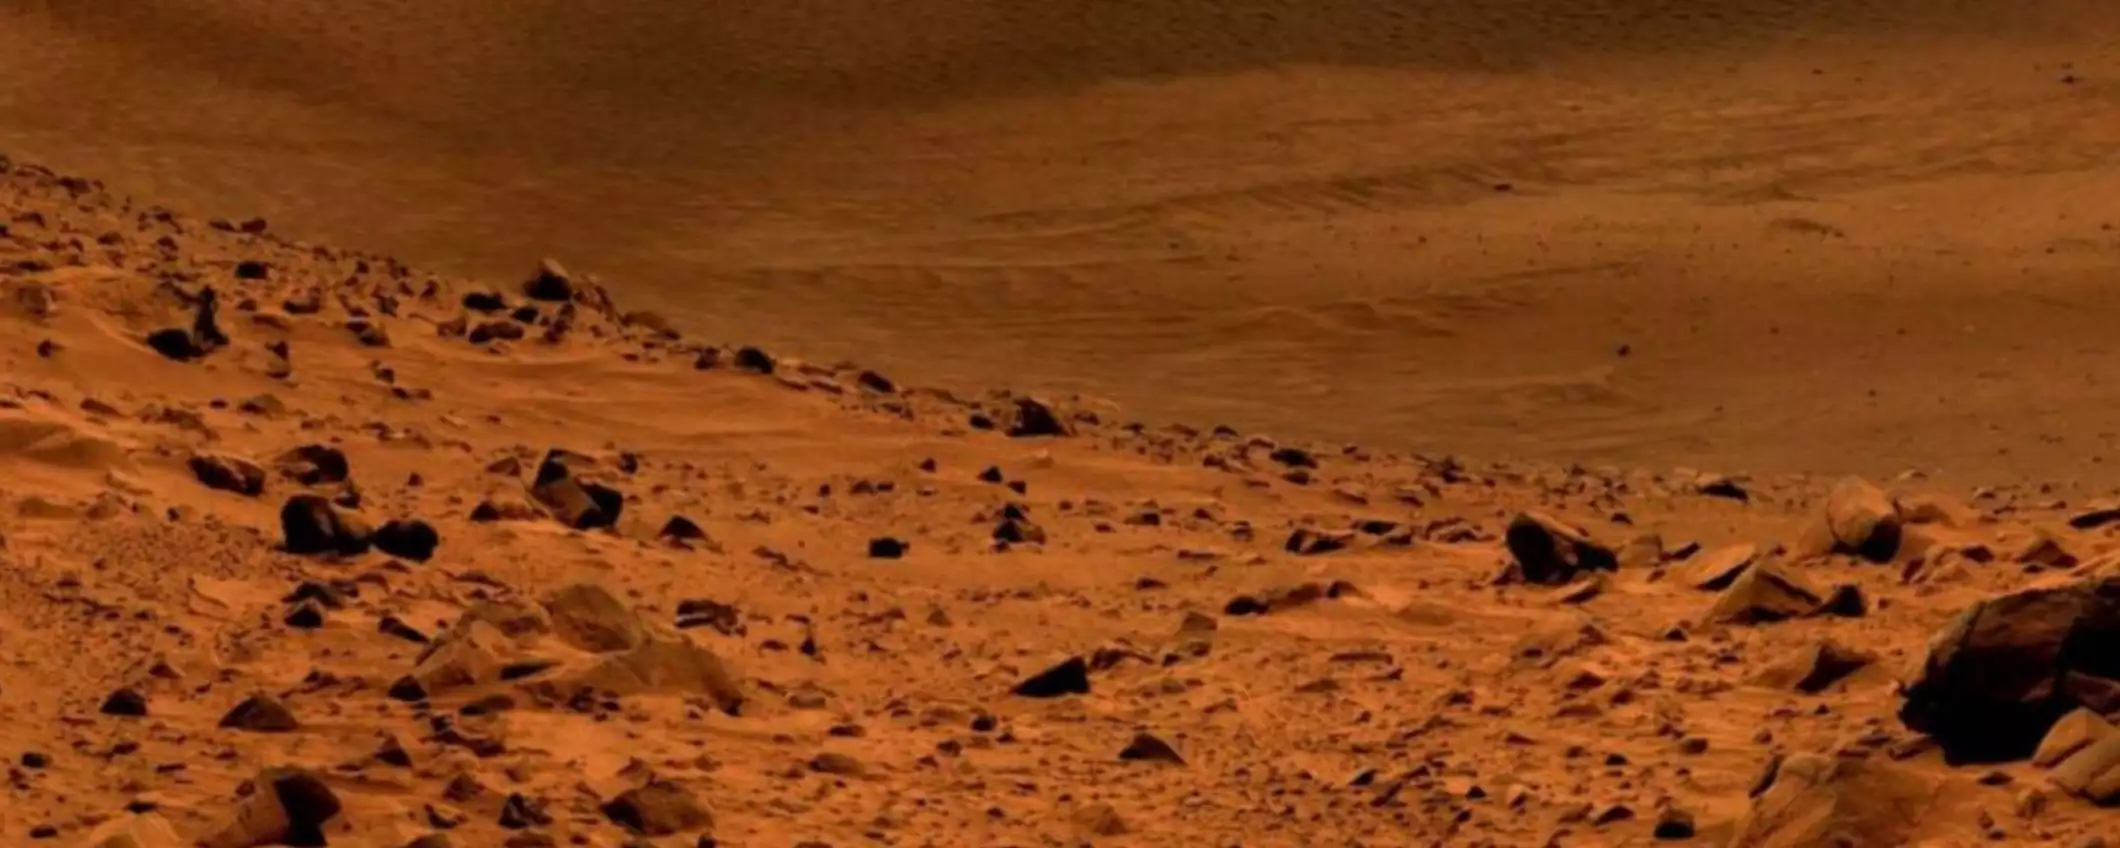 Marte: il ghiaccio rivelerebbe la storia climatica del pianeta